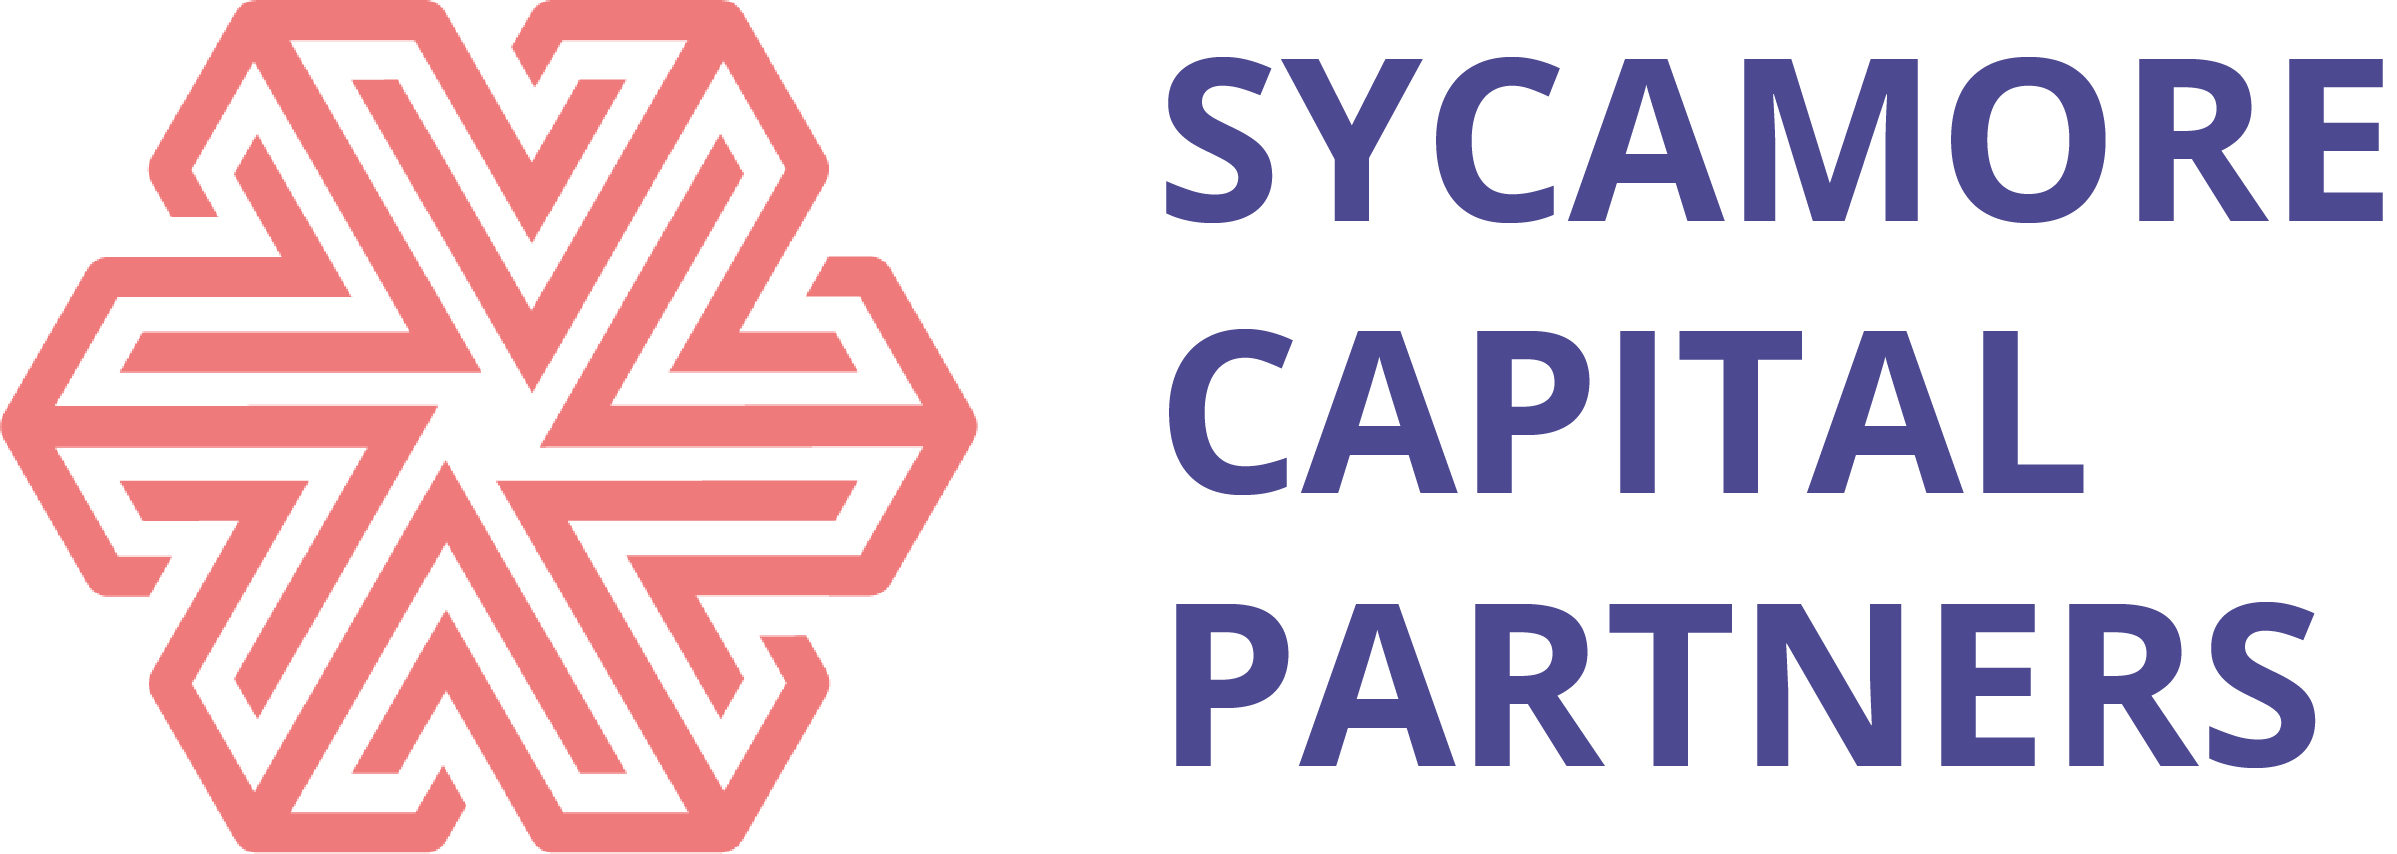 Sycamore Capital Partners – Magántőkealap befektető